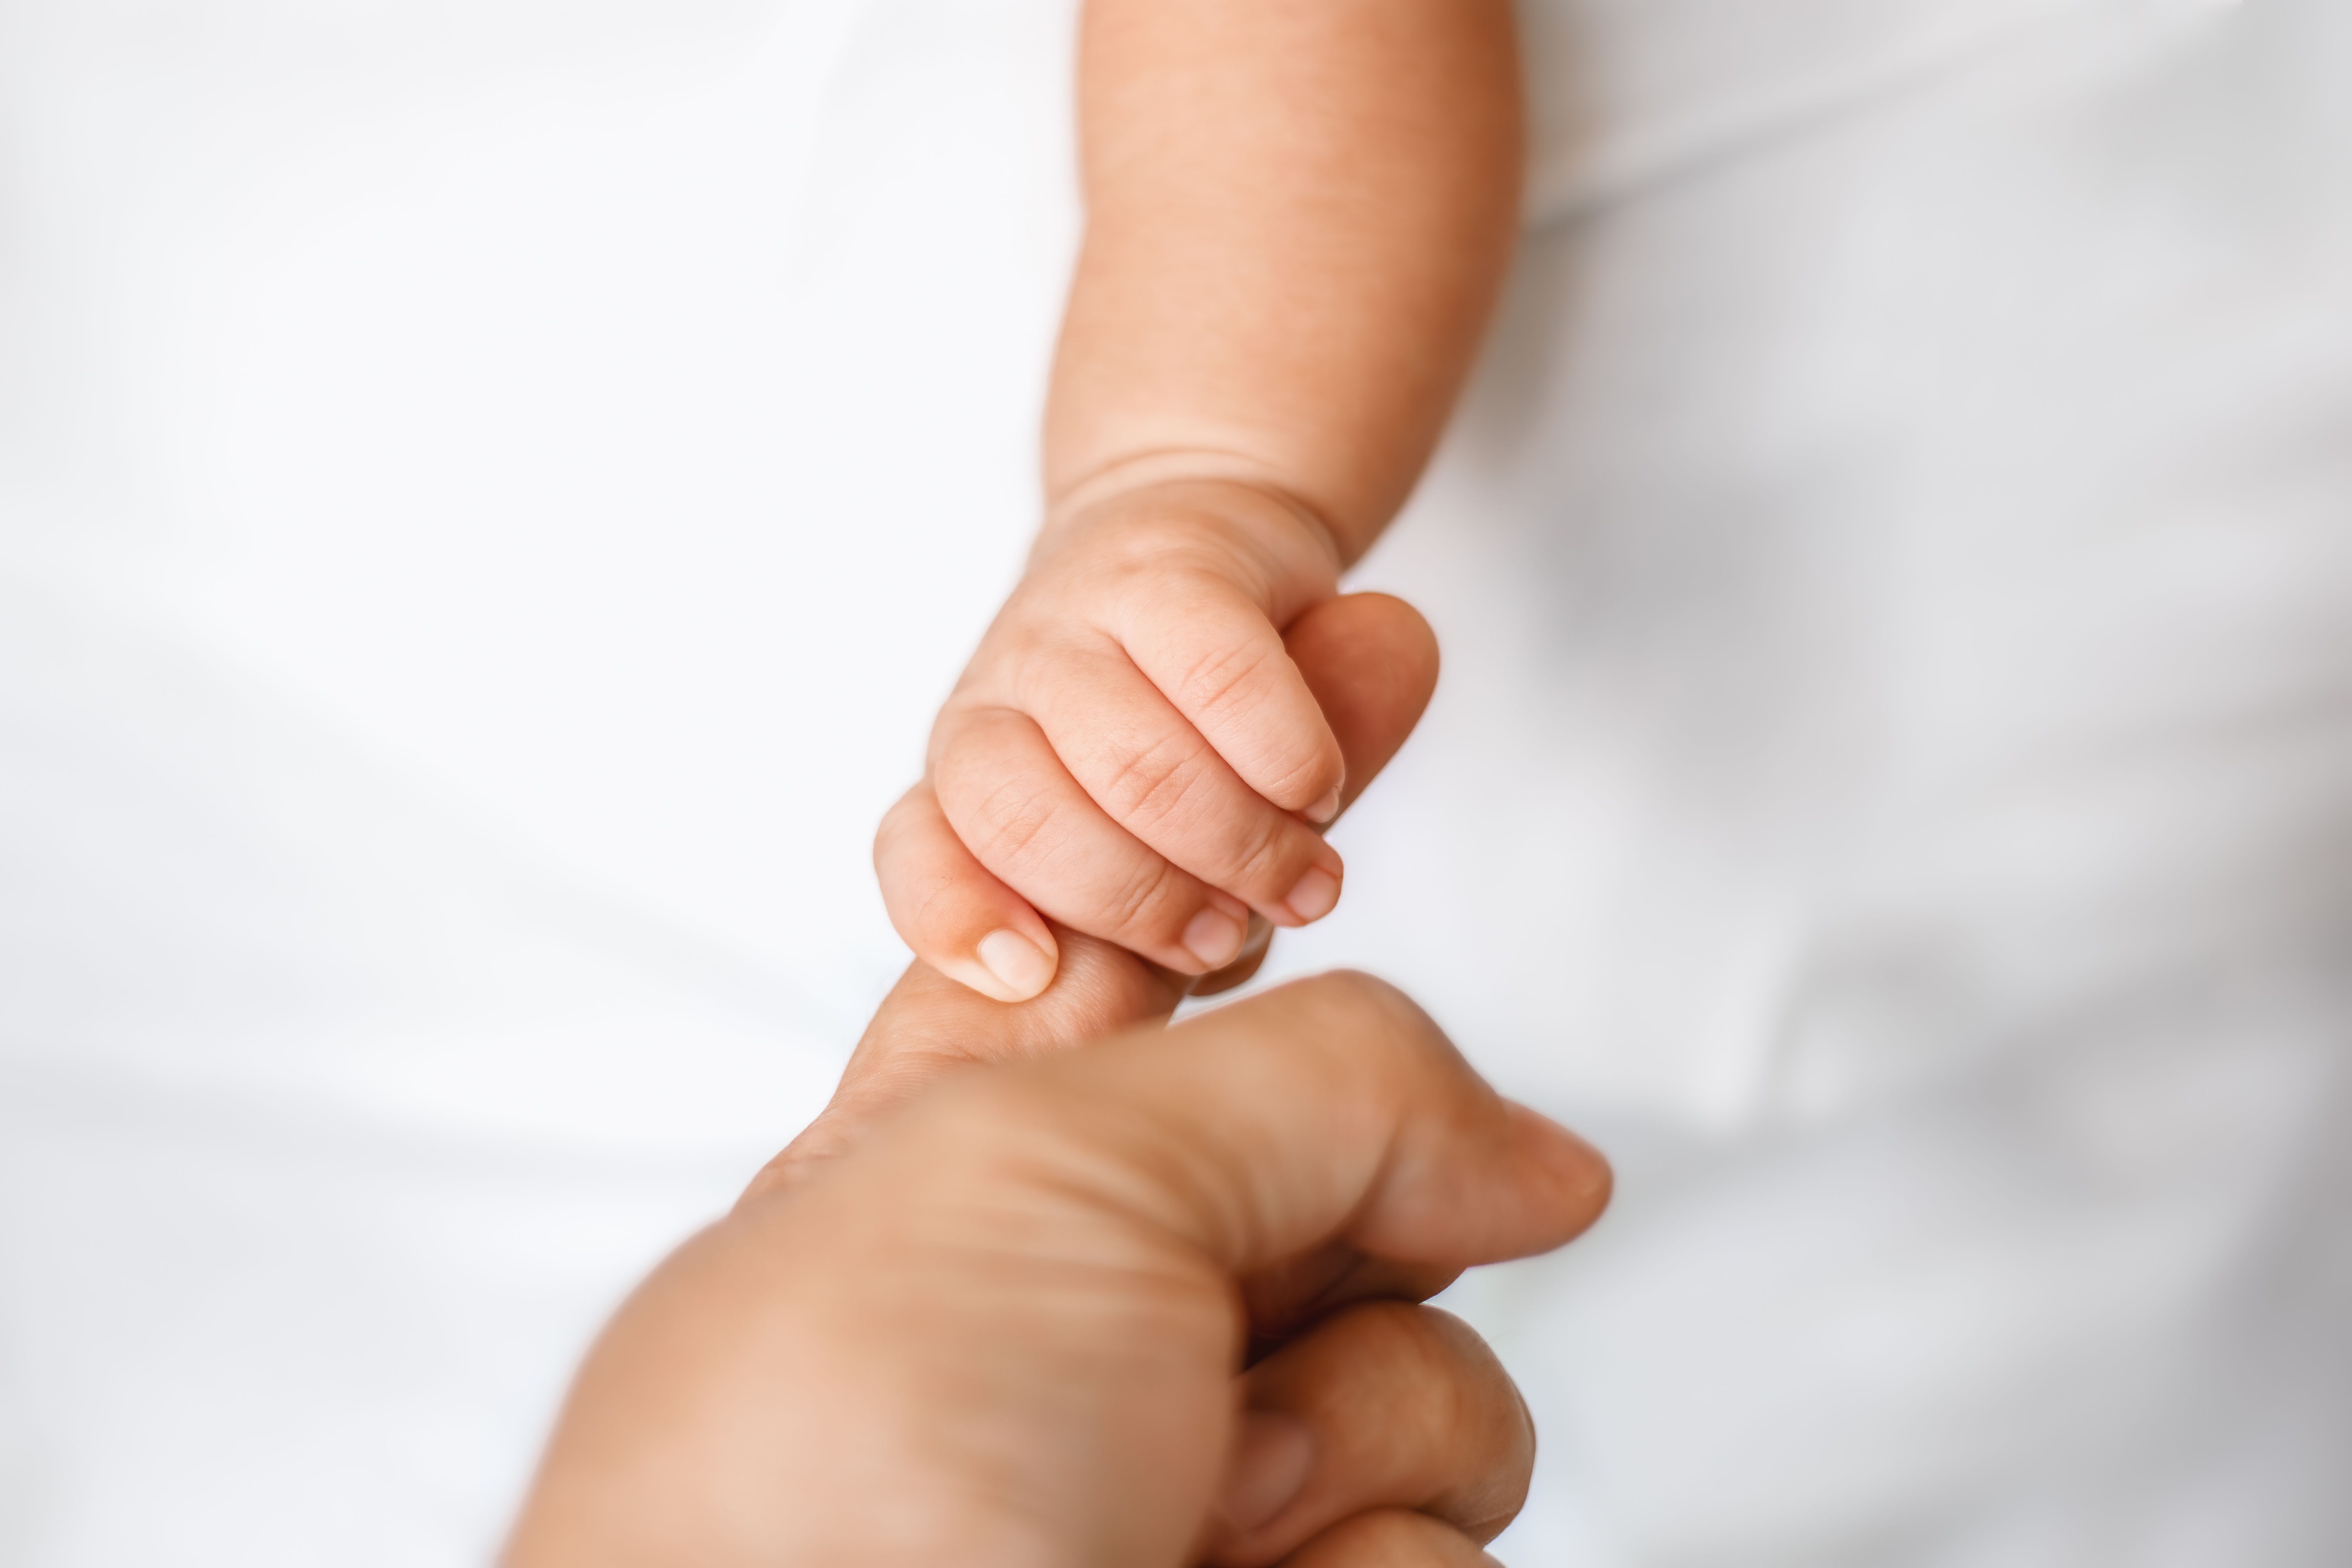 Ein Baby, das den Finger eines Erwachsenen hält | Quelle: Getty Images